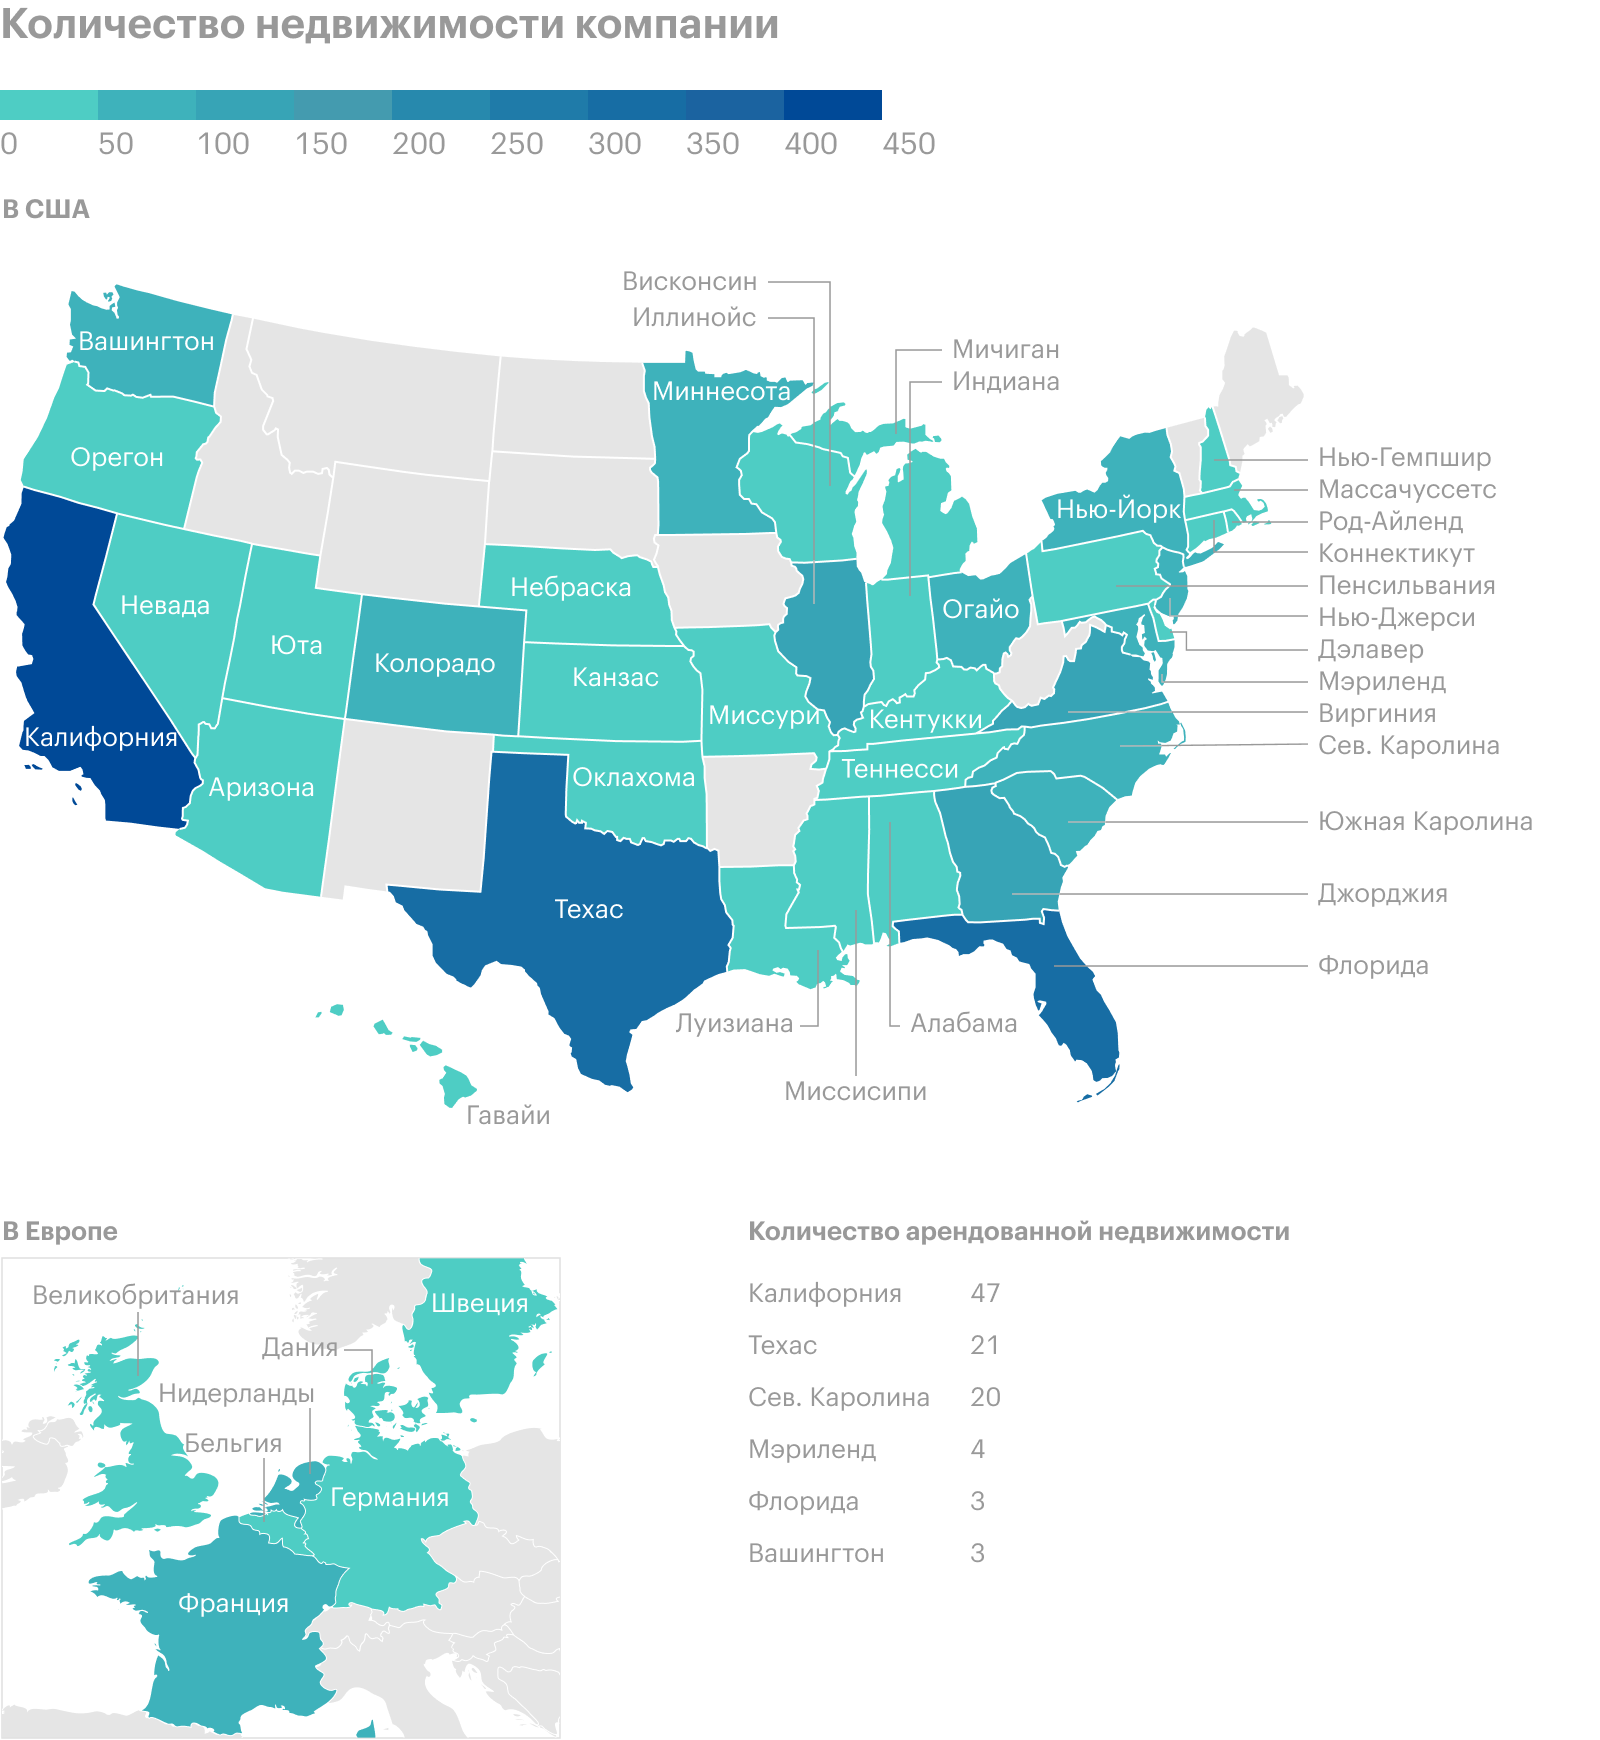 Объекты недвижимости компании в разных штатах США и странах Европы. Источник: годовой отчет компании, стр. 0 (2)